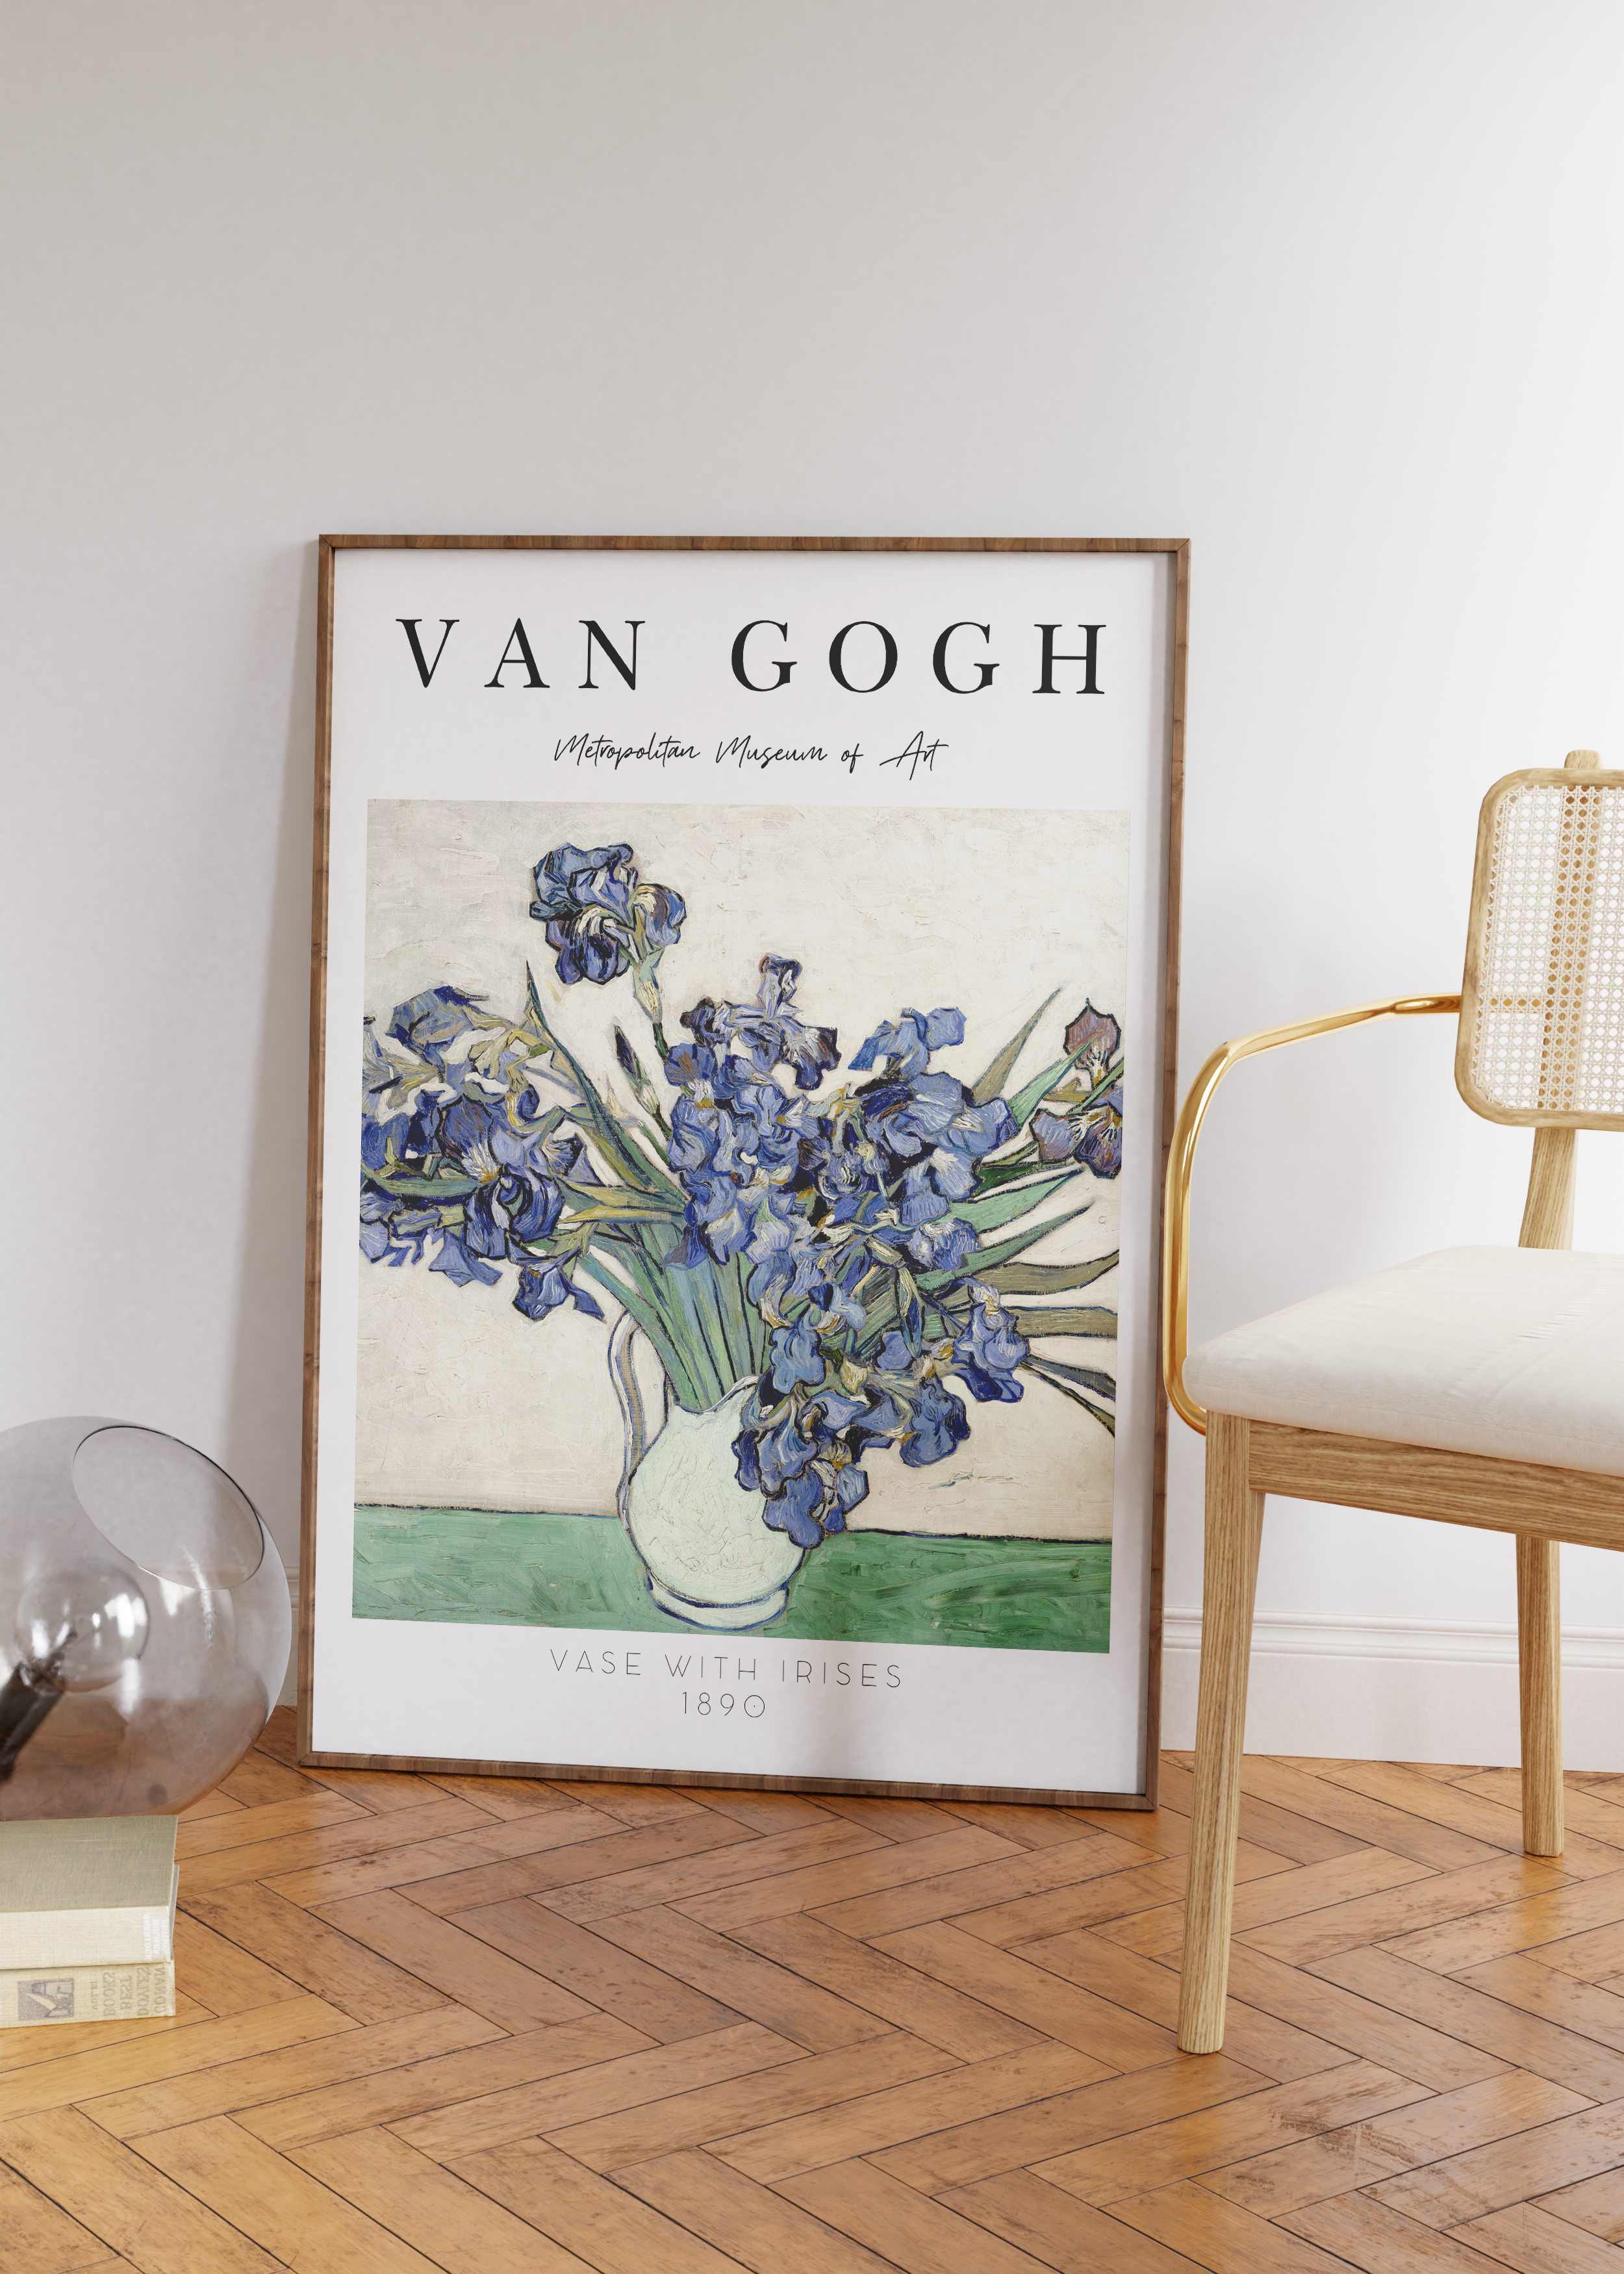 Van Gogh Flowers Artwork Unframed Poster